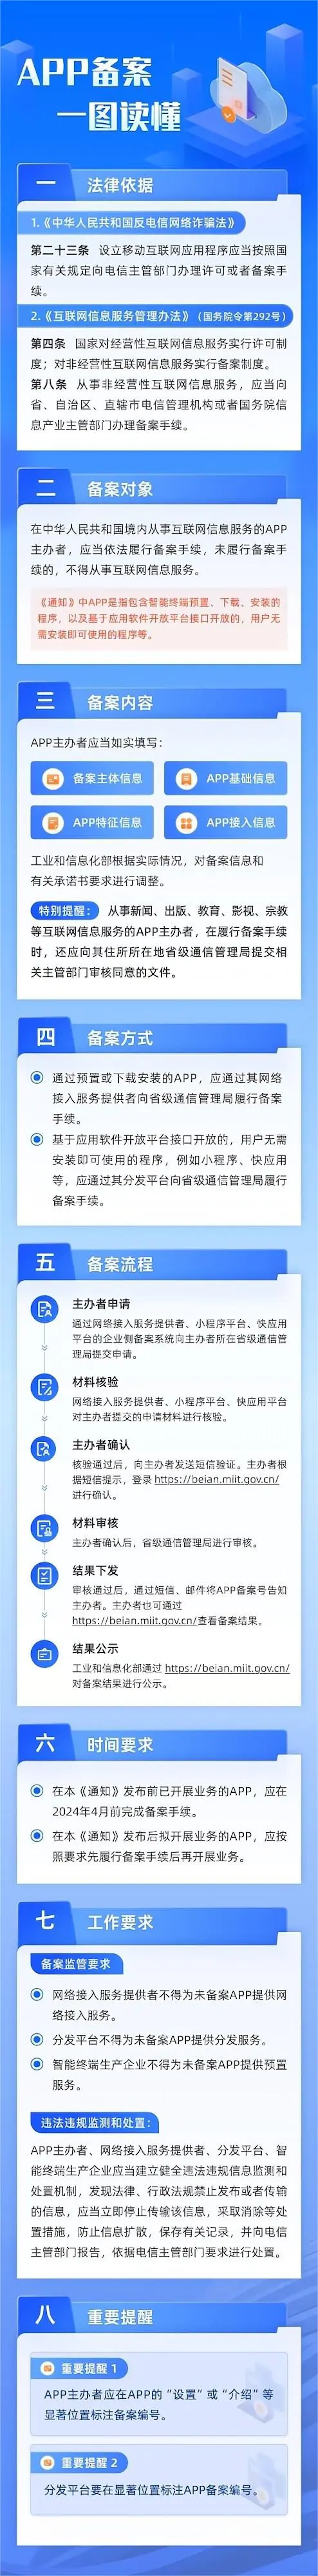 中國手機 APP 備案審查